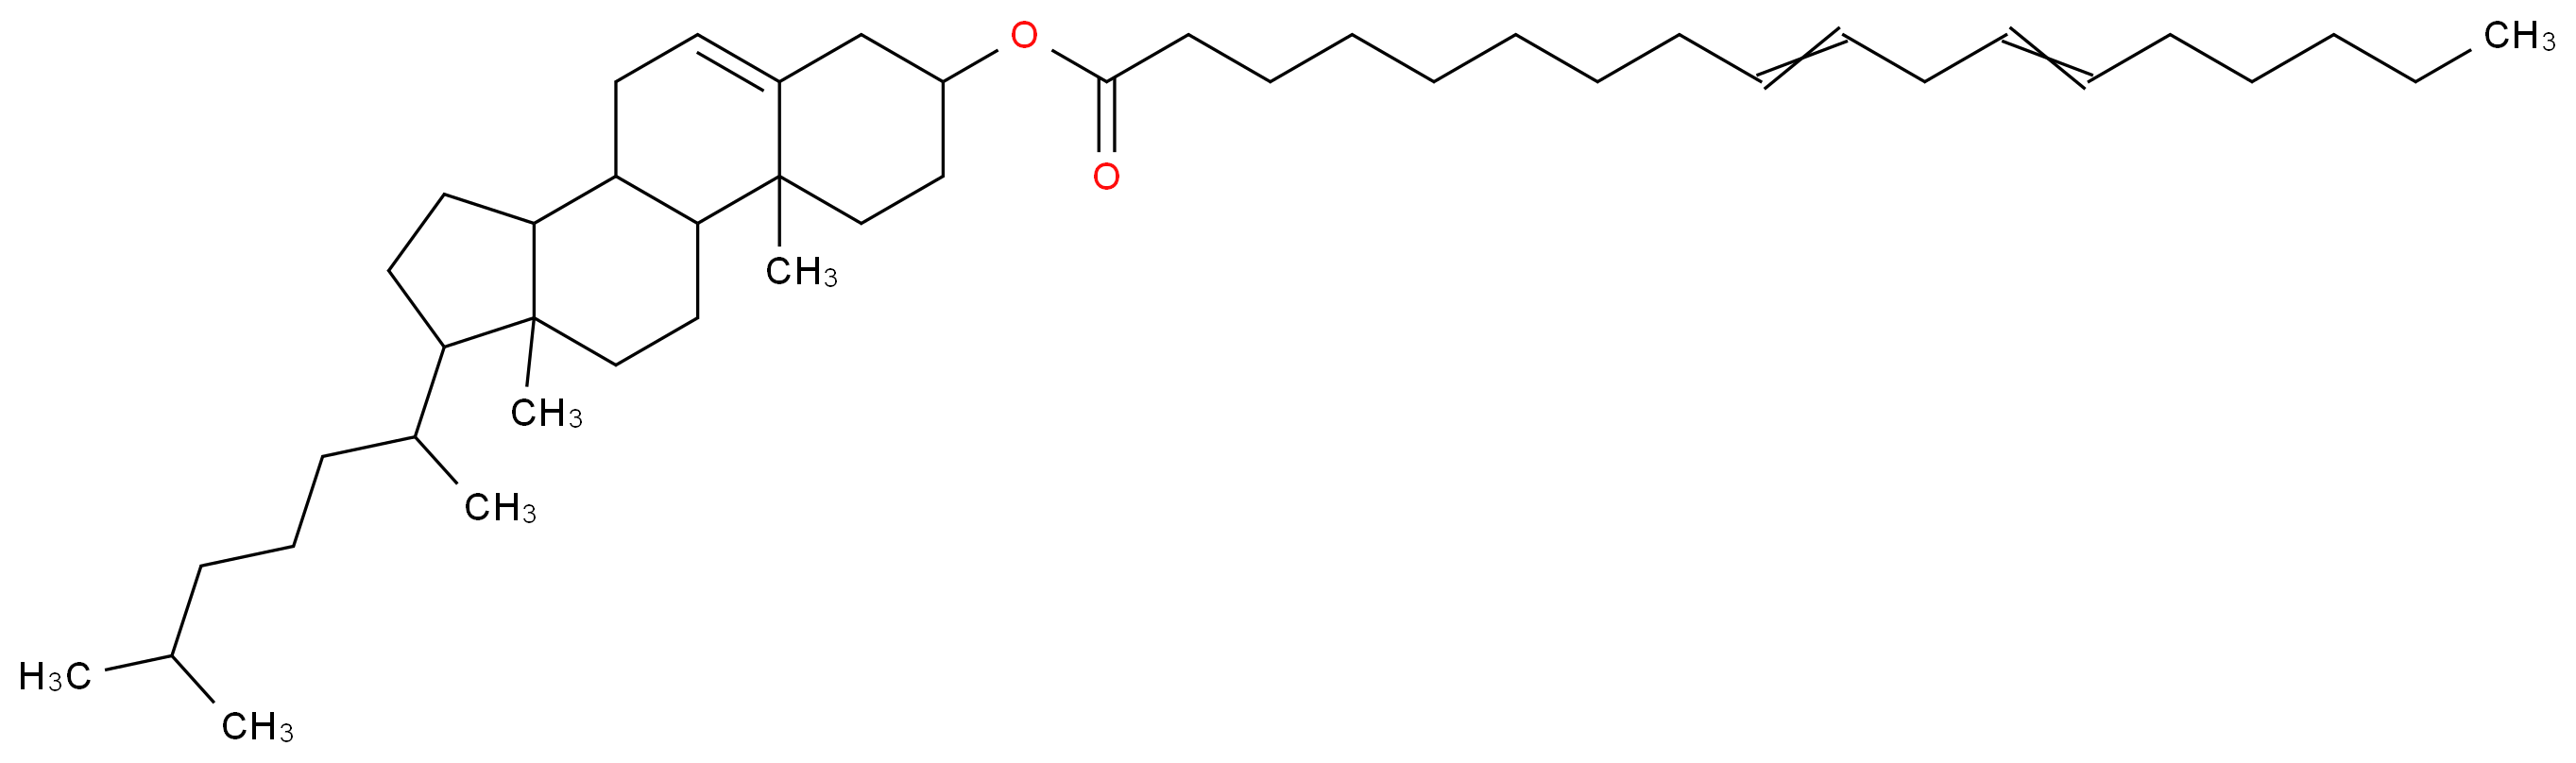 CHOLESTERYL LINOLEATE_分子结构_CAS_604-33-1)